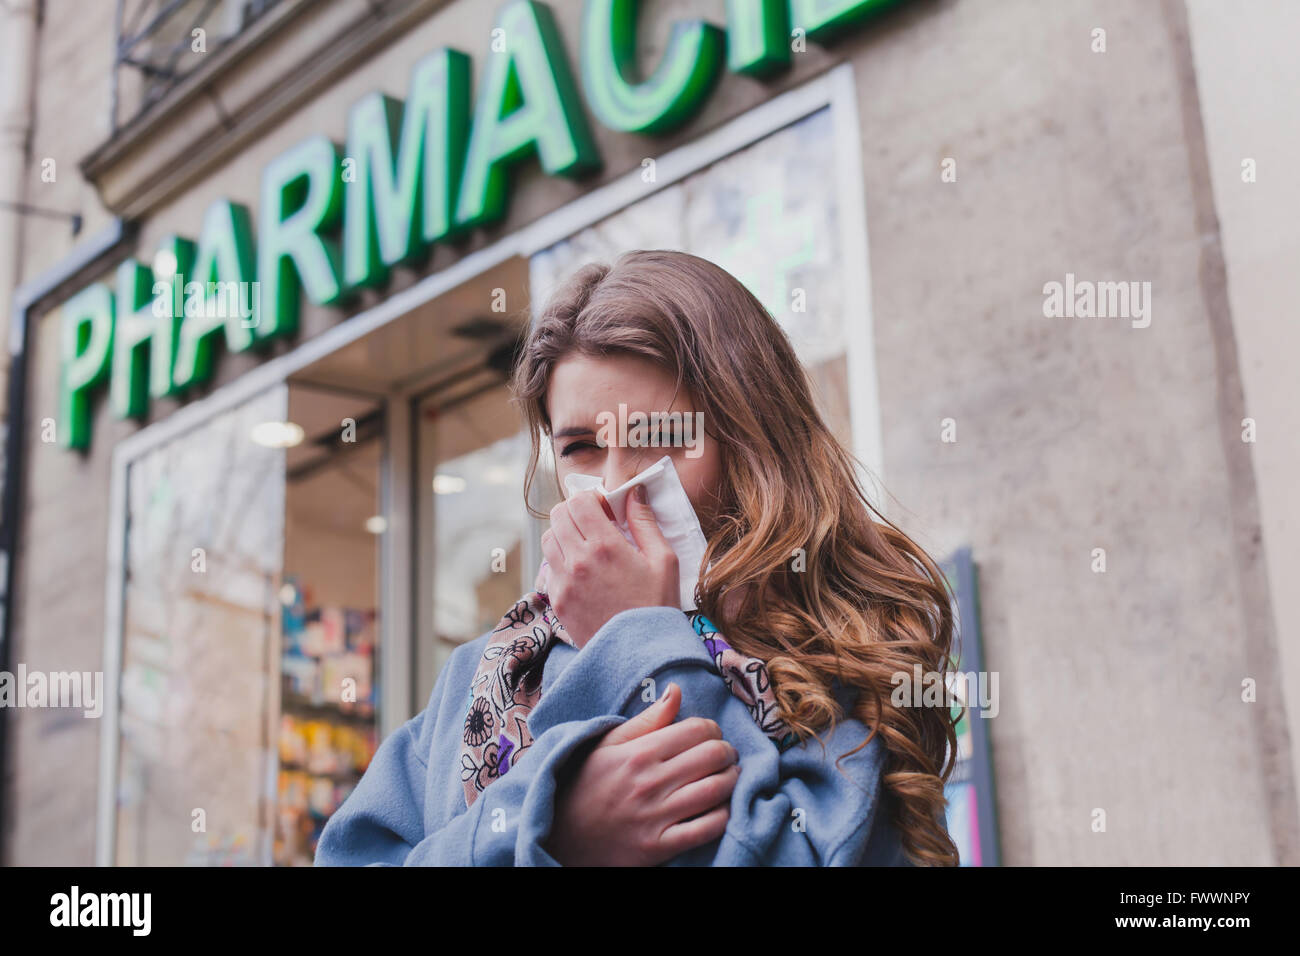 Malati donna freddo accanto a una farmacia, influenza concetto, acquistare medicamenti Foto Stock